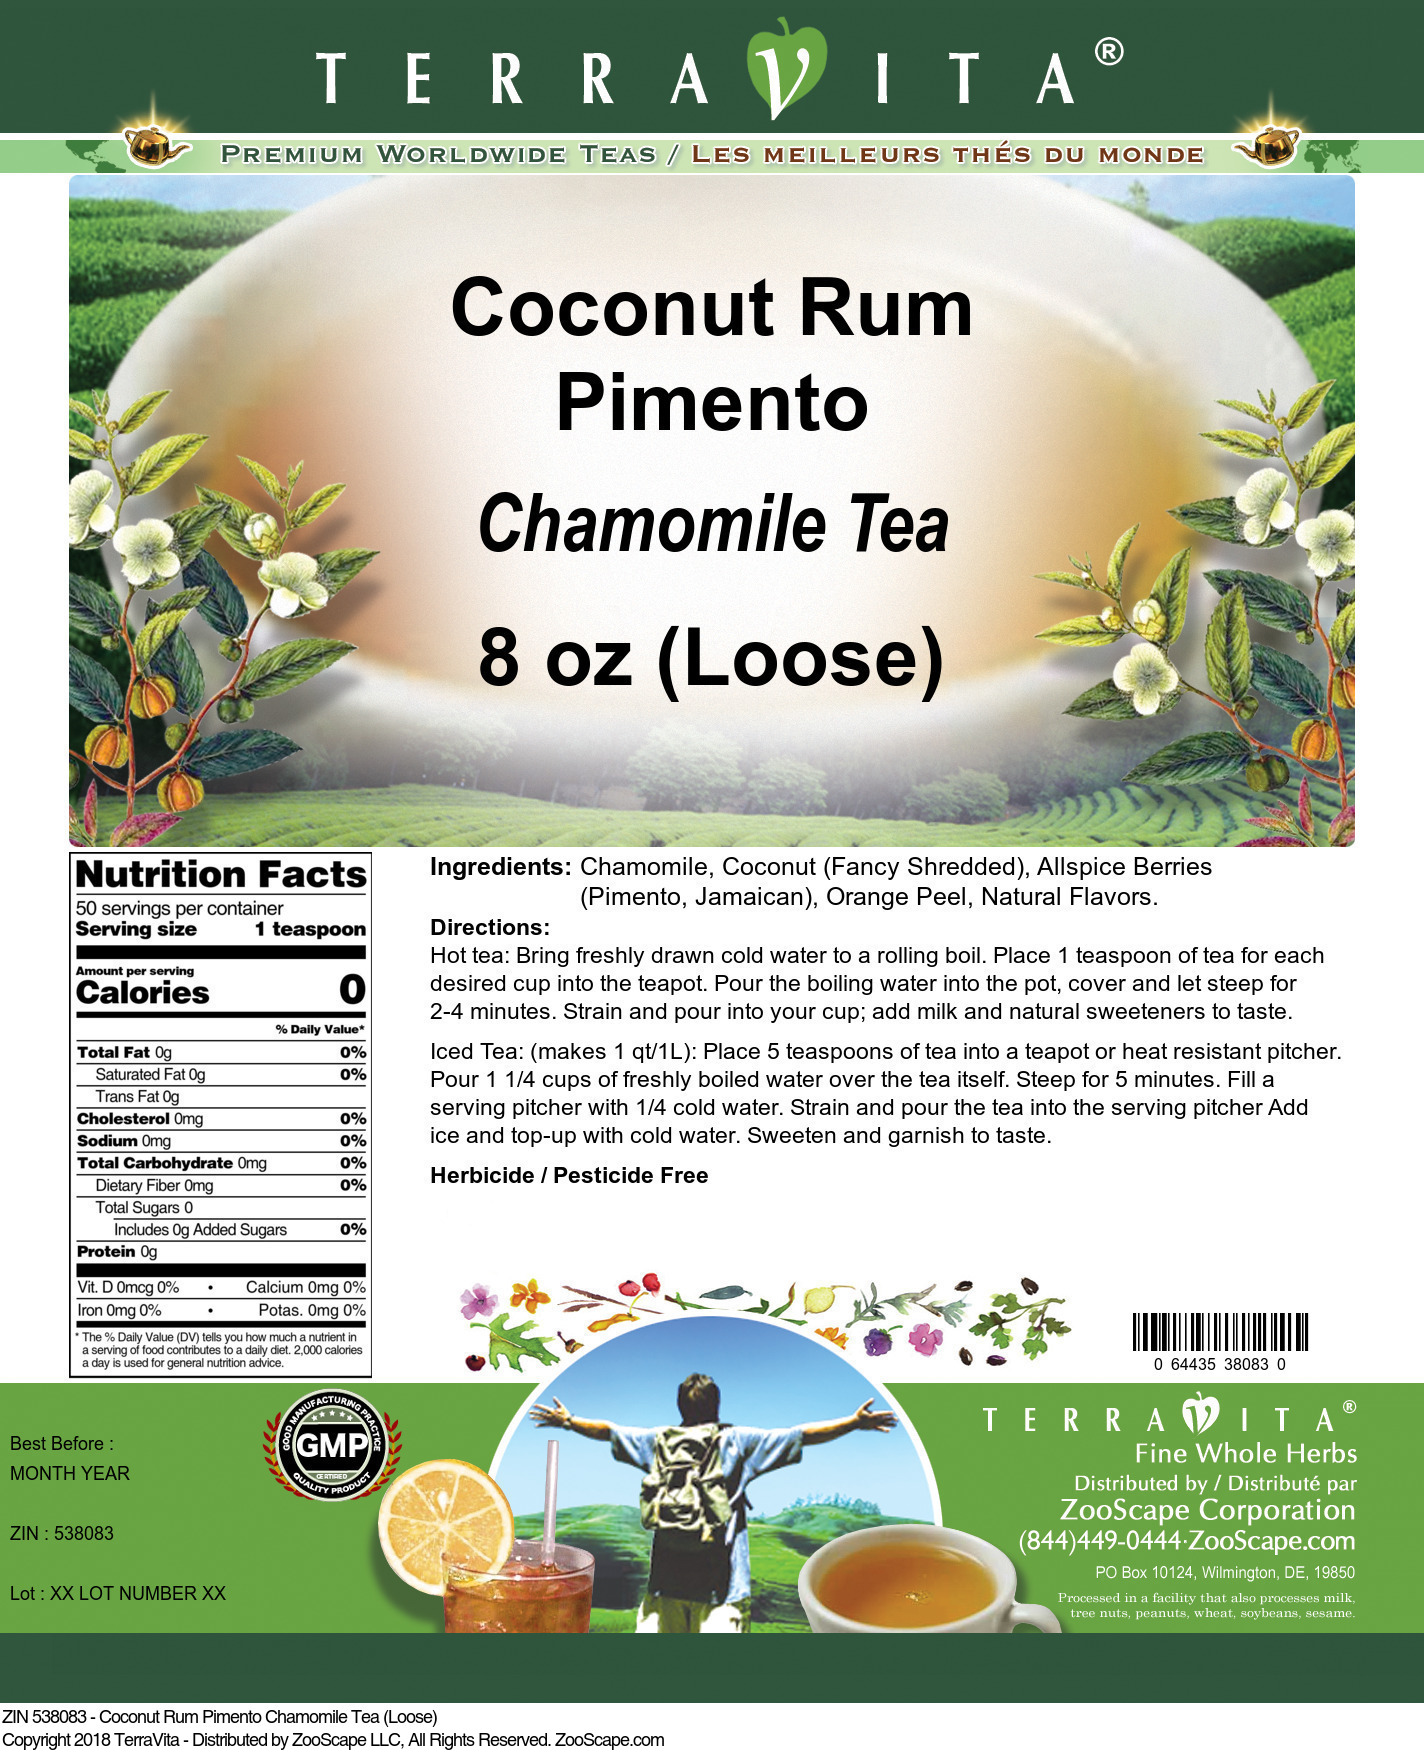 Coconut Rum Pimento Chamomile Tea (Loose) - Label